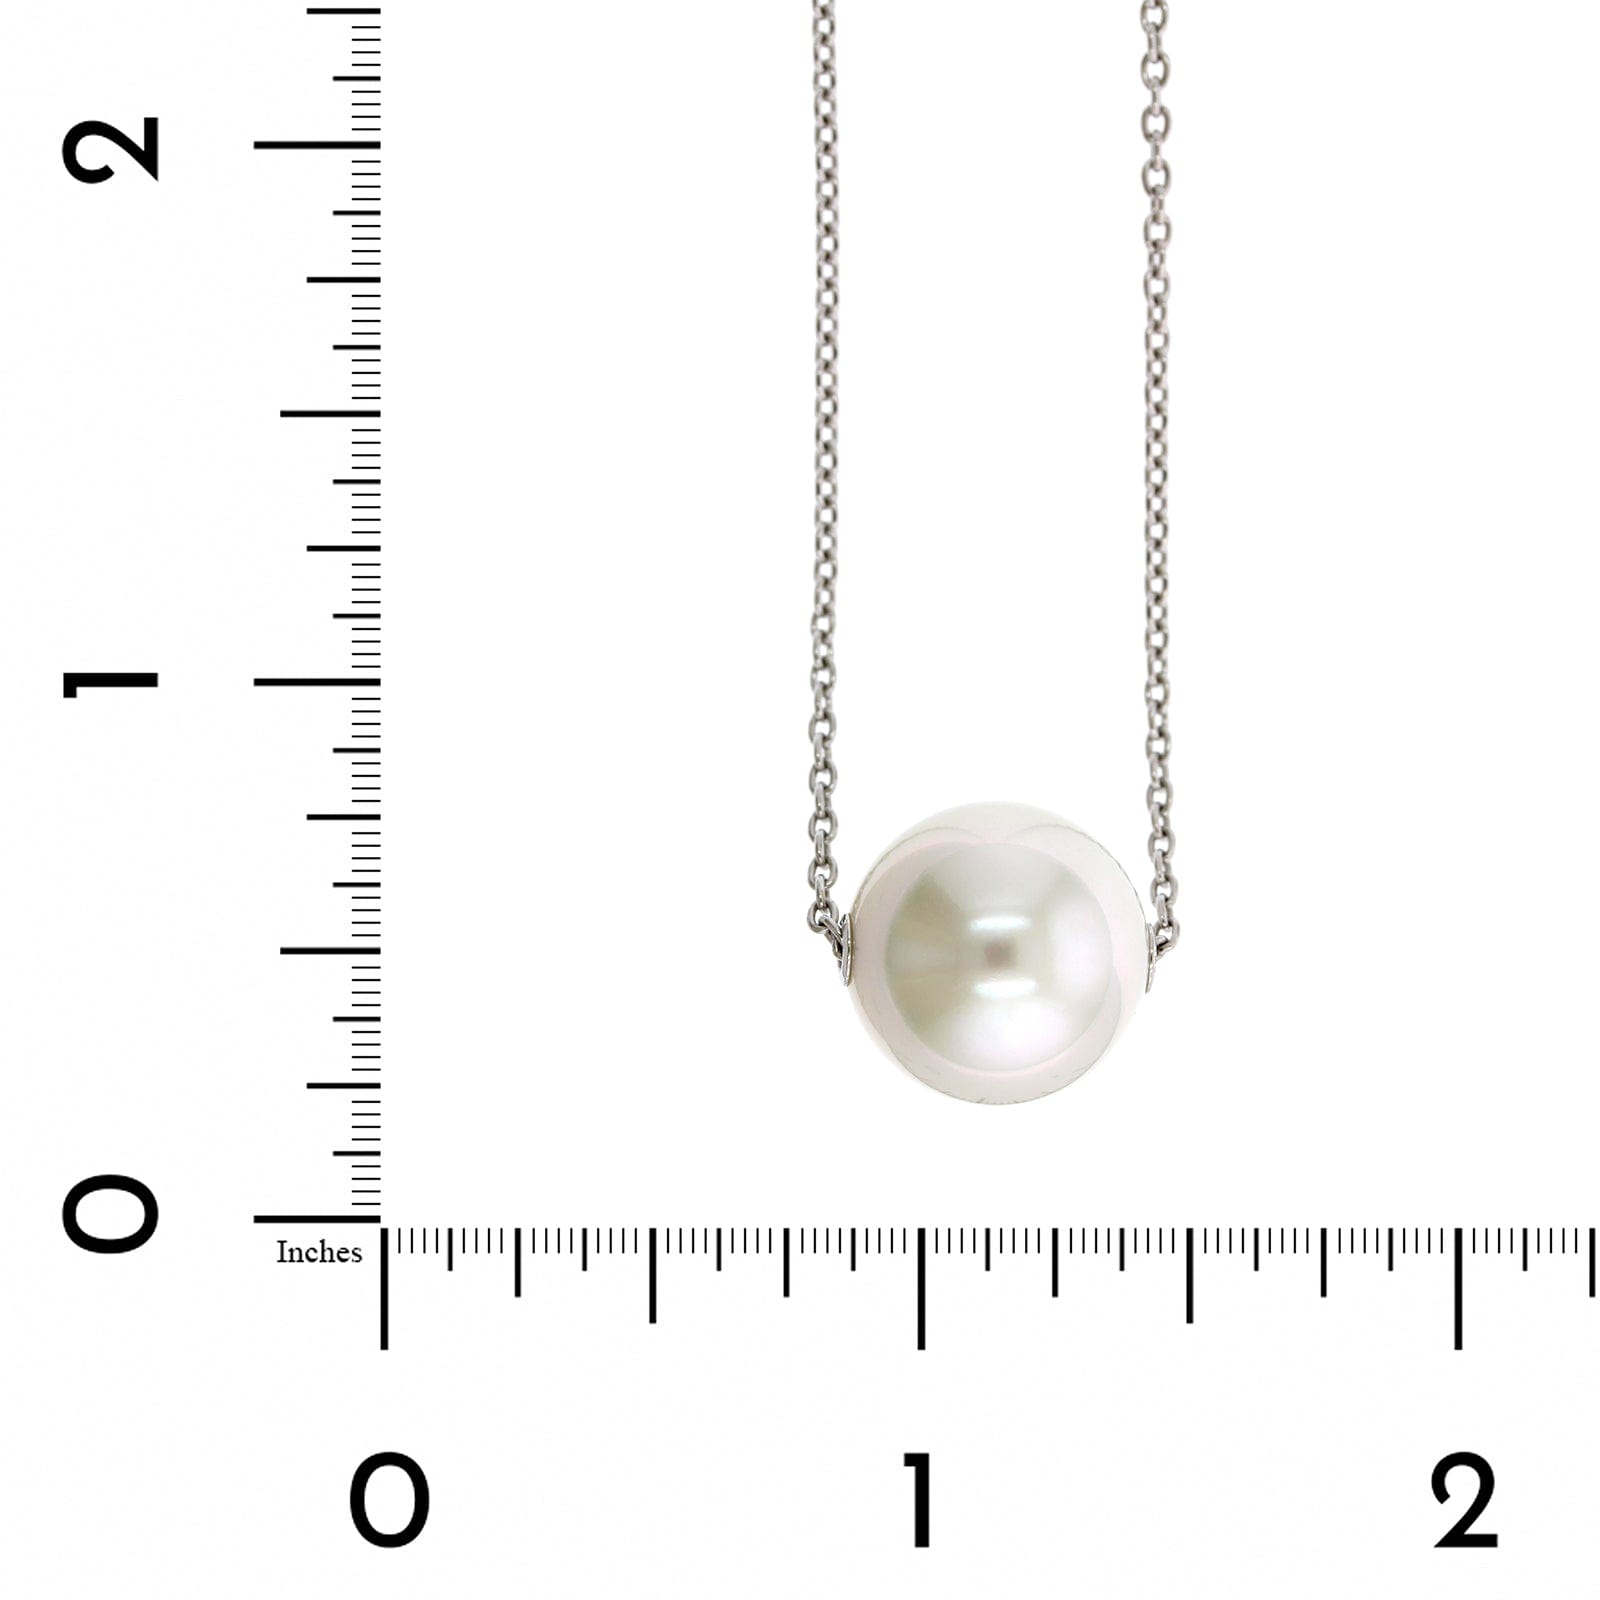 Mikimoto 18K White Gold White South Sea Pearl Pendant